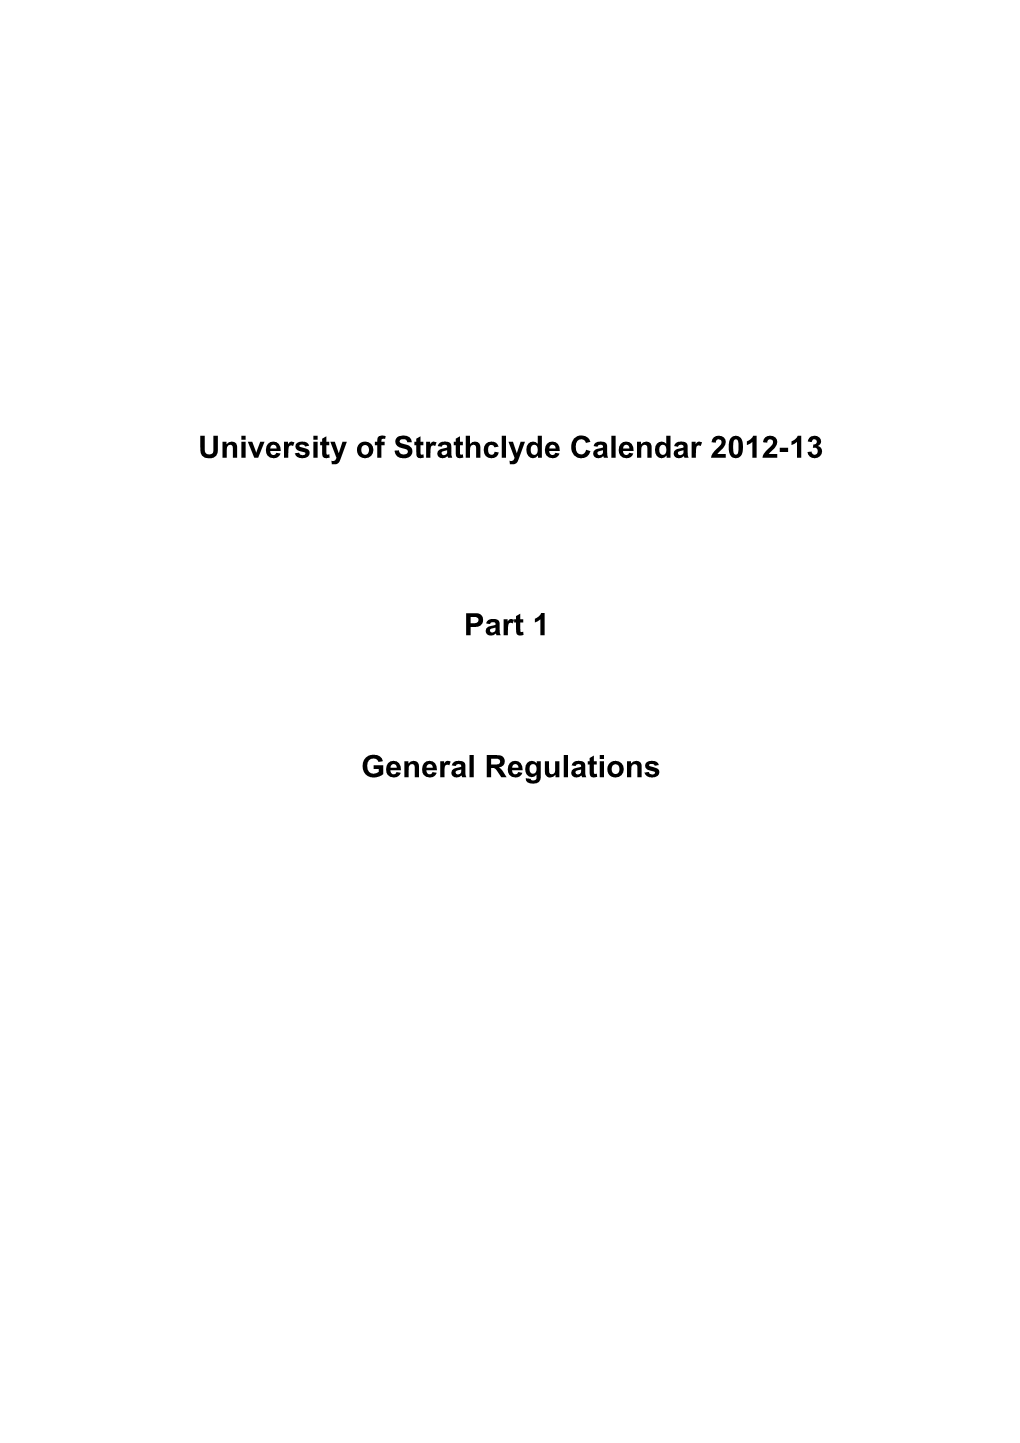 Universityof Strathclyde Calendar 2012-13